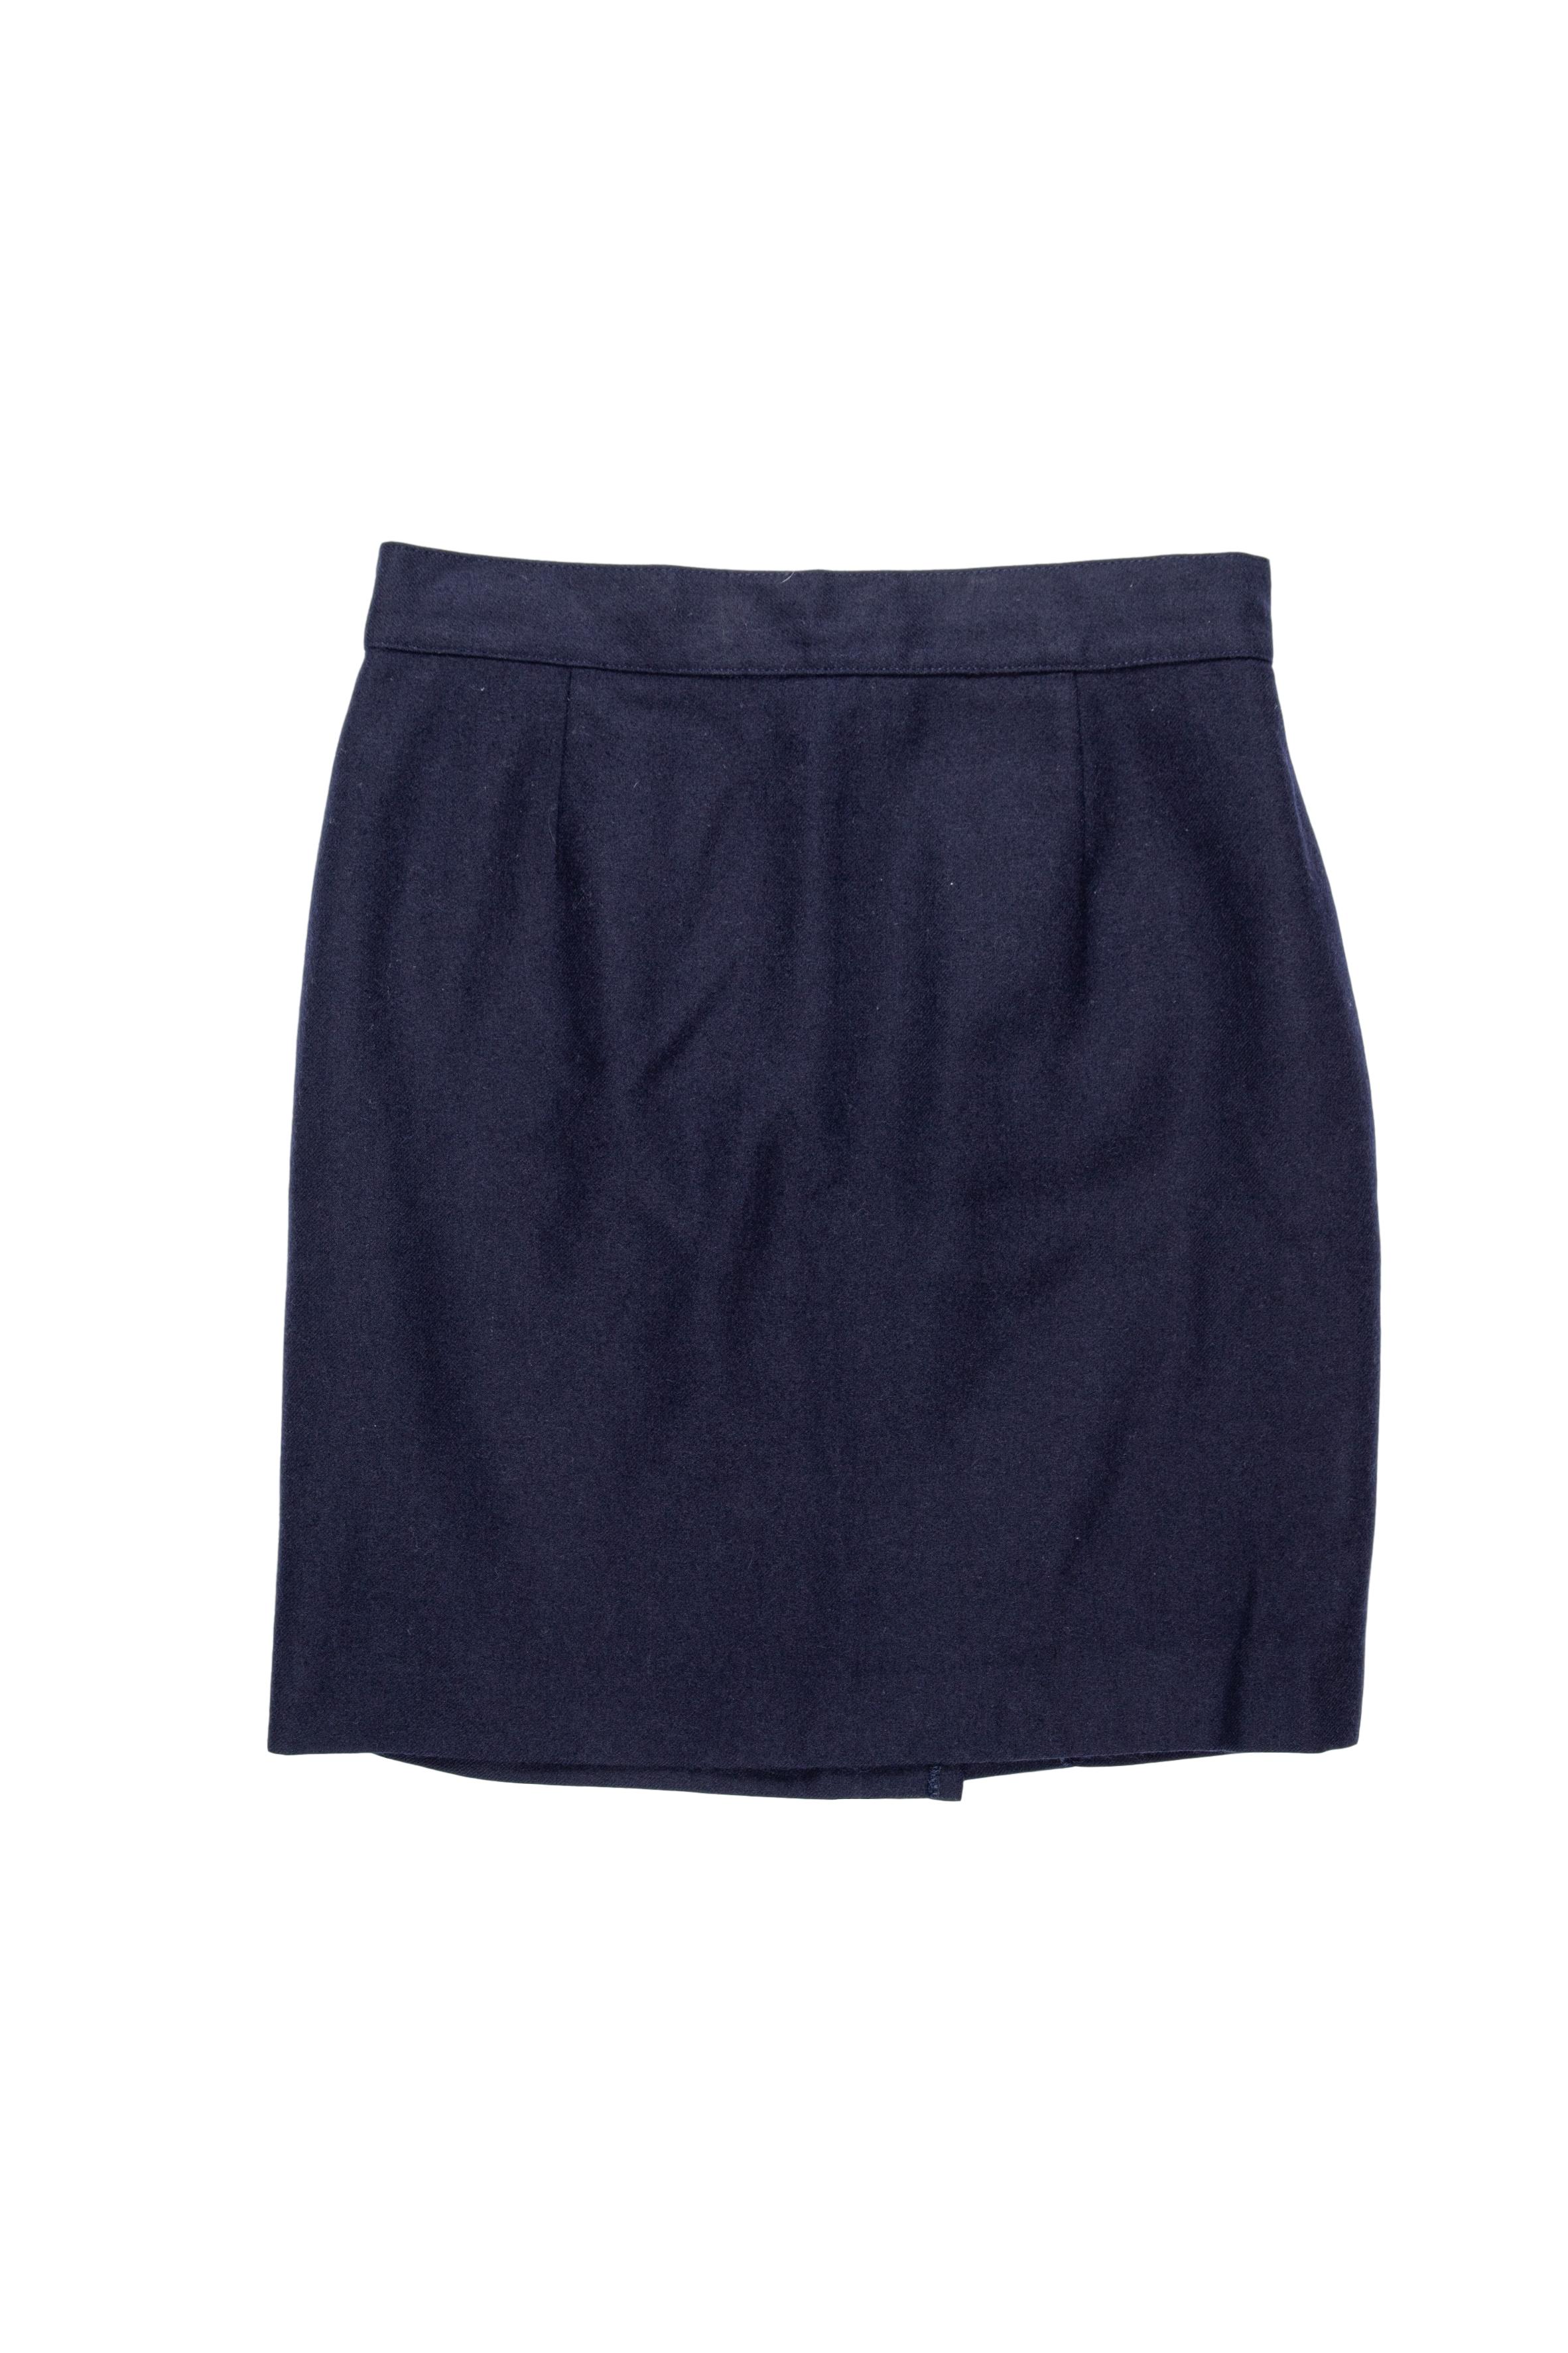 Falda mini de paño azul, forrada, con botón y cierre posterior. Cintura 70 cm, largo 48 cm